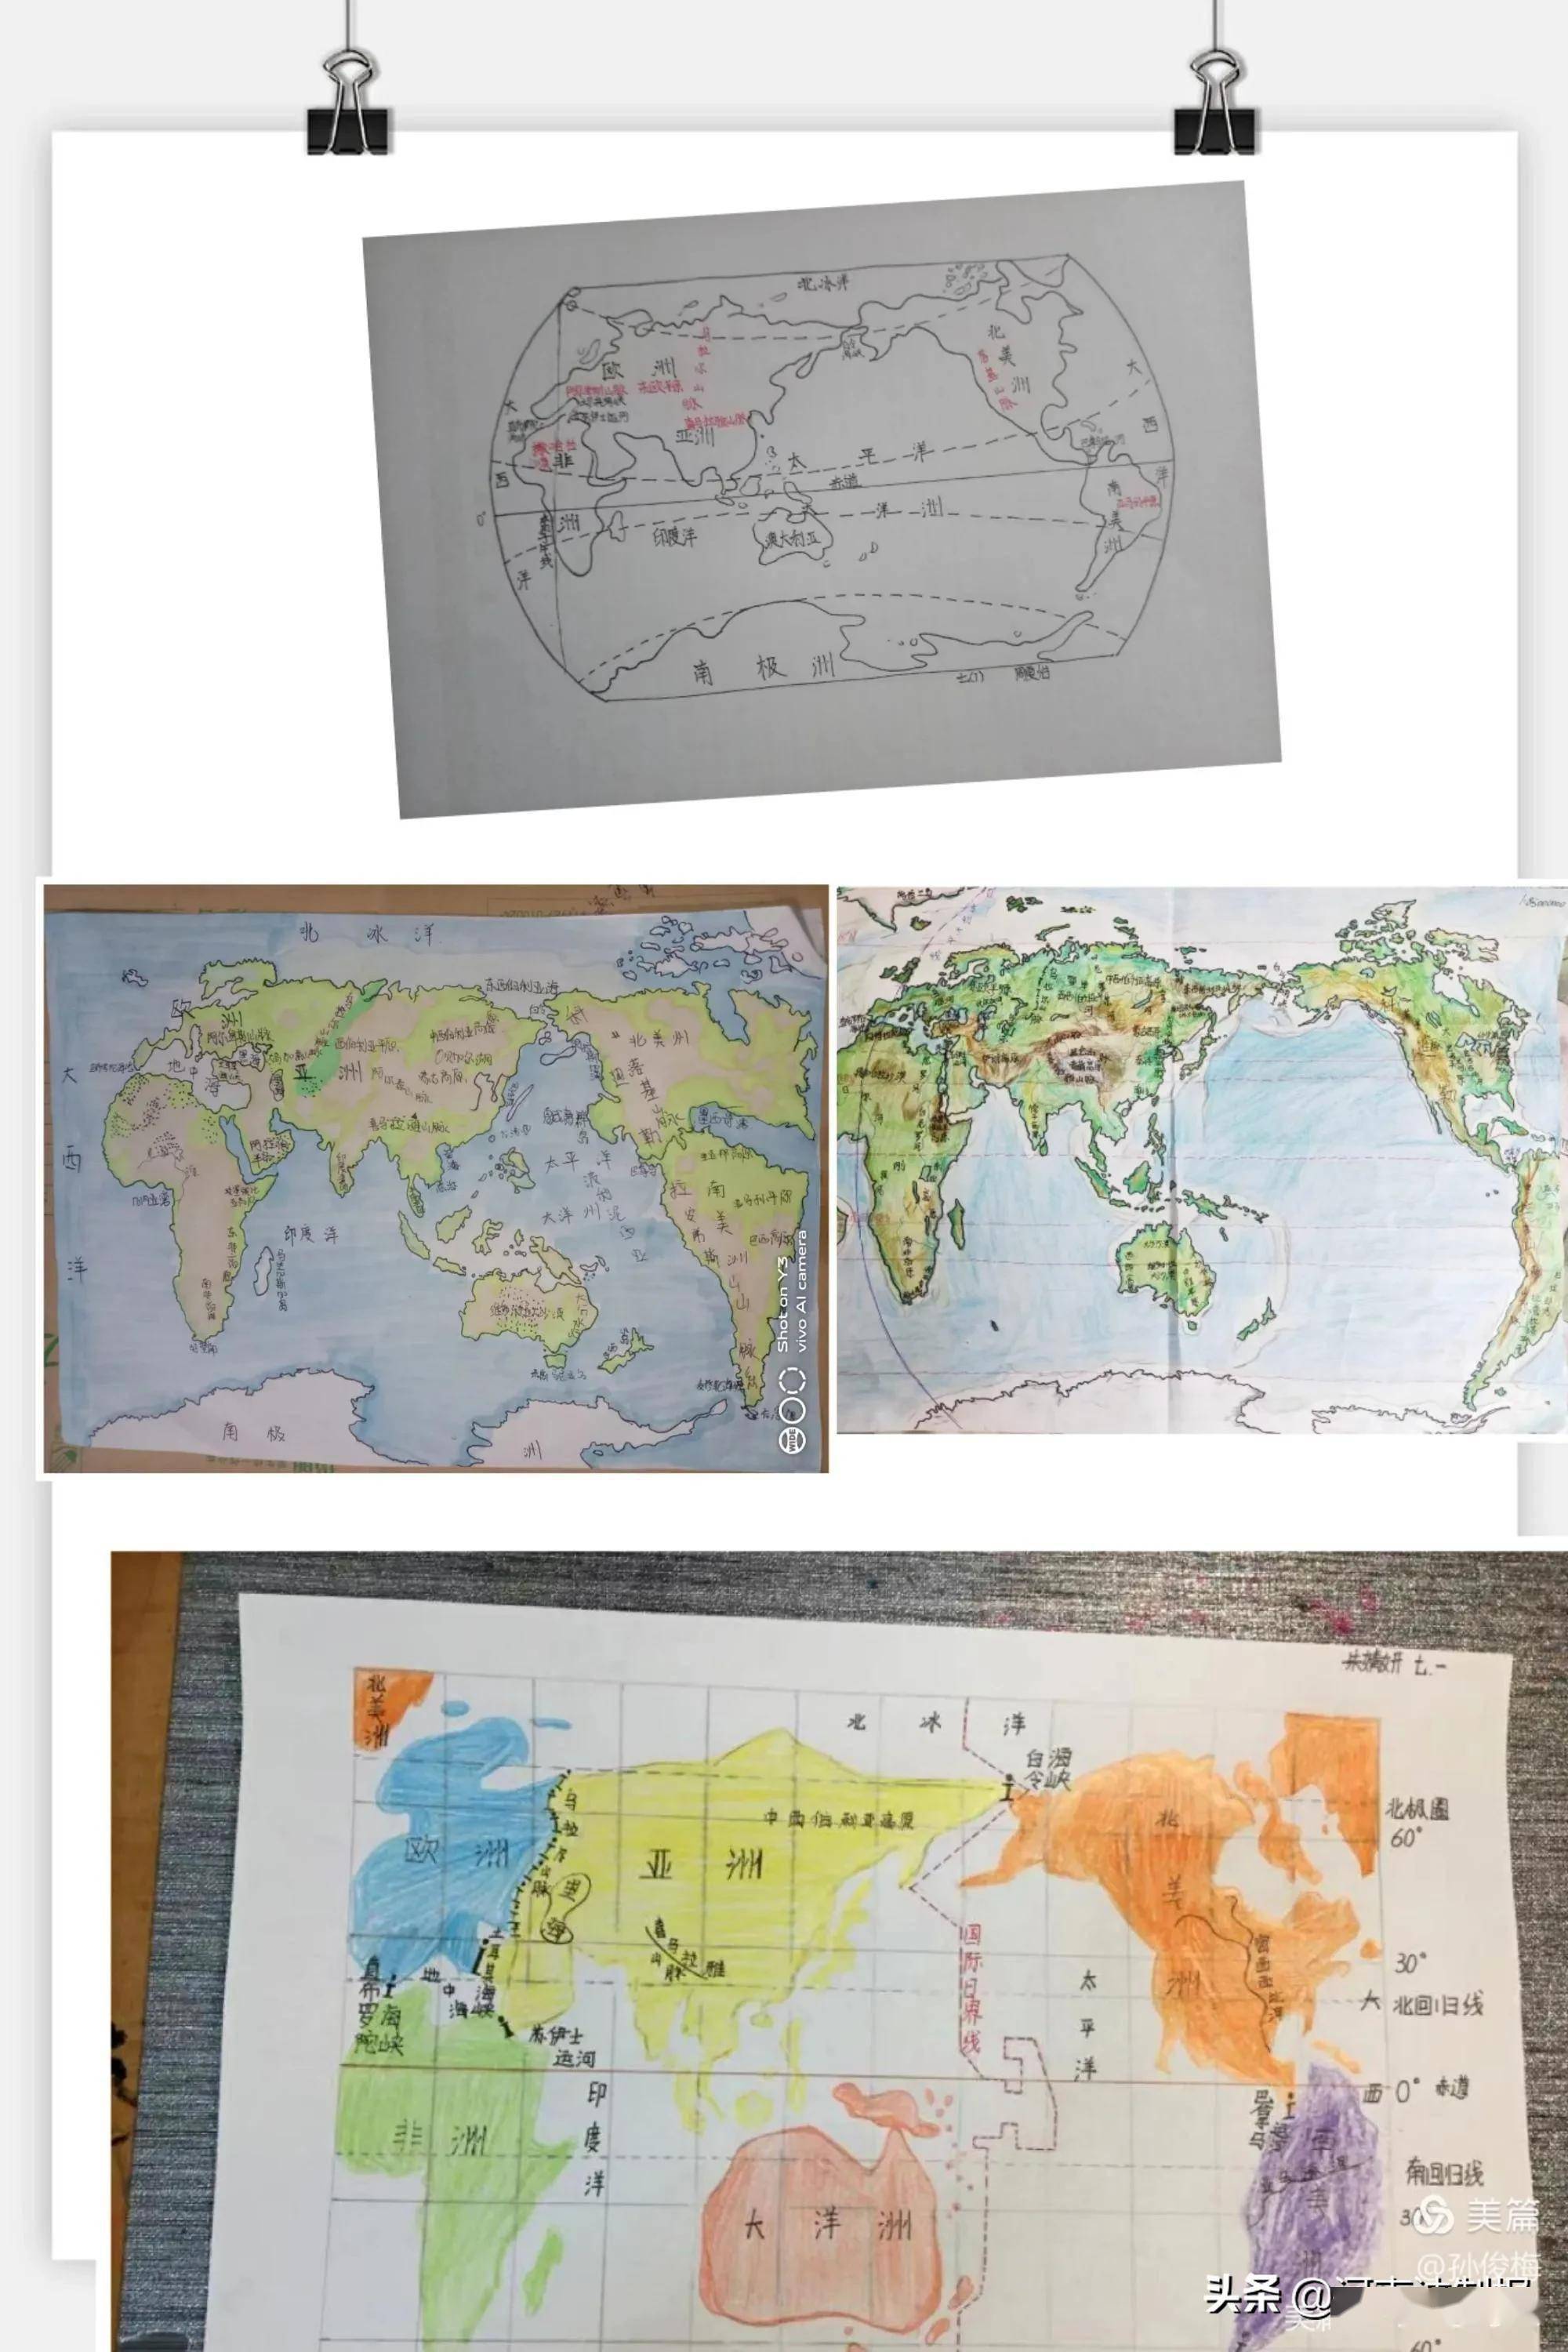 优秀作业展示:设计目的:提高学生动手能力,通过绘制世界地图,加深